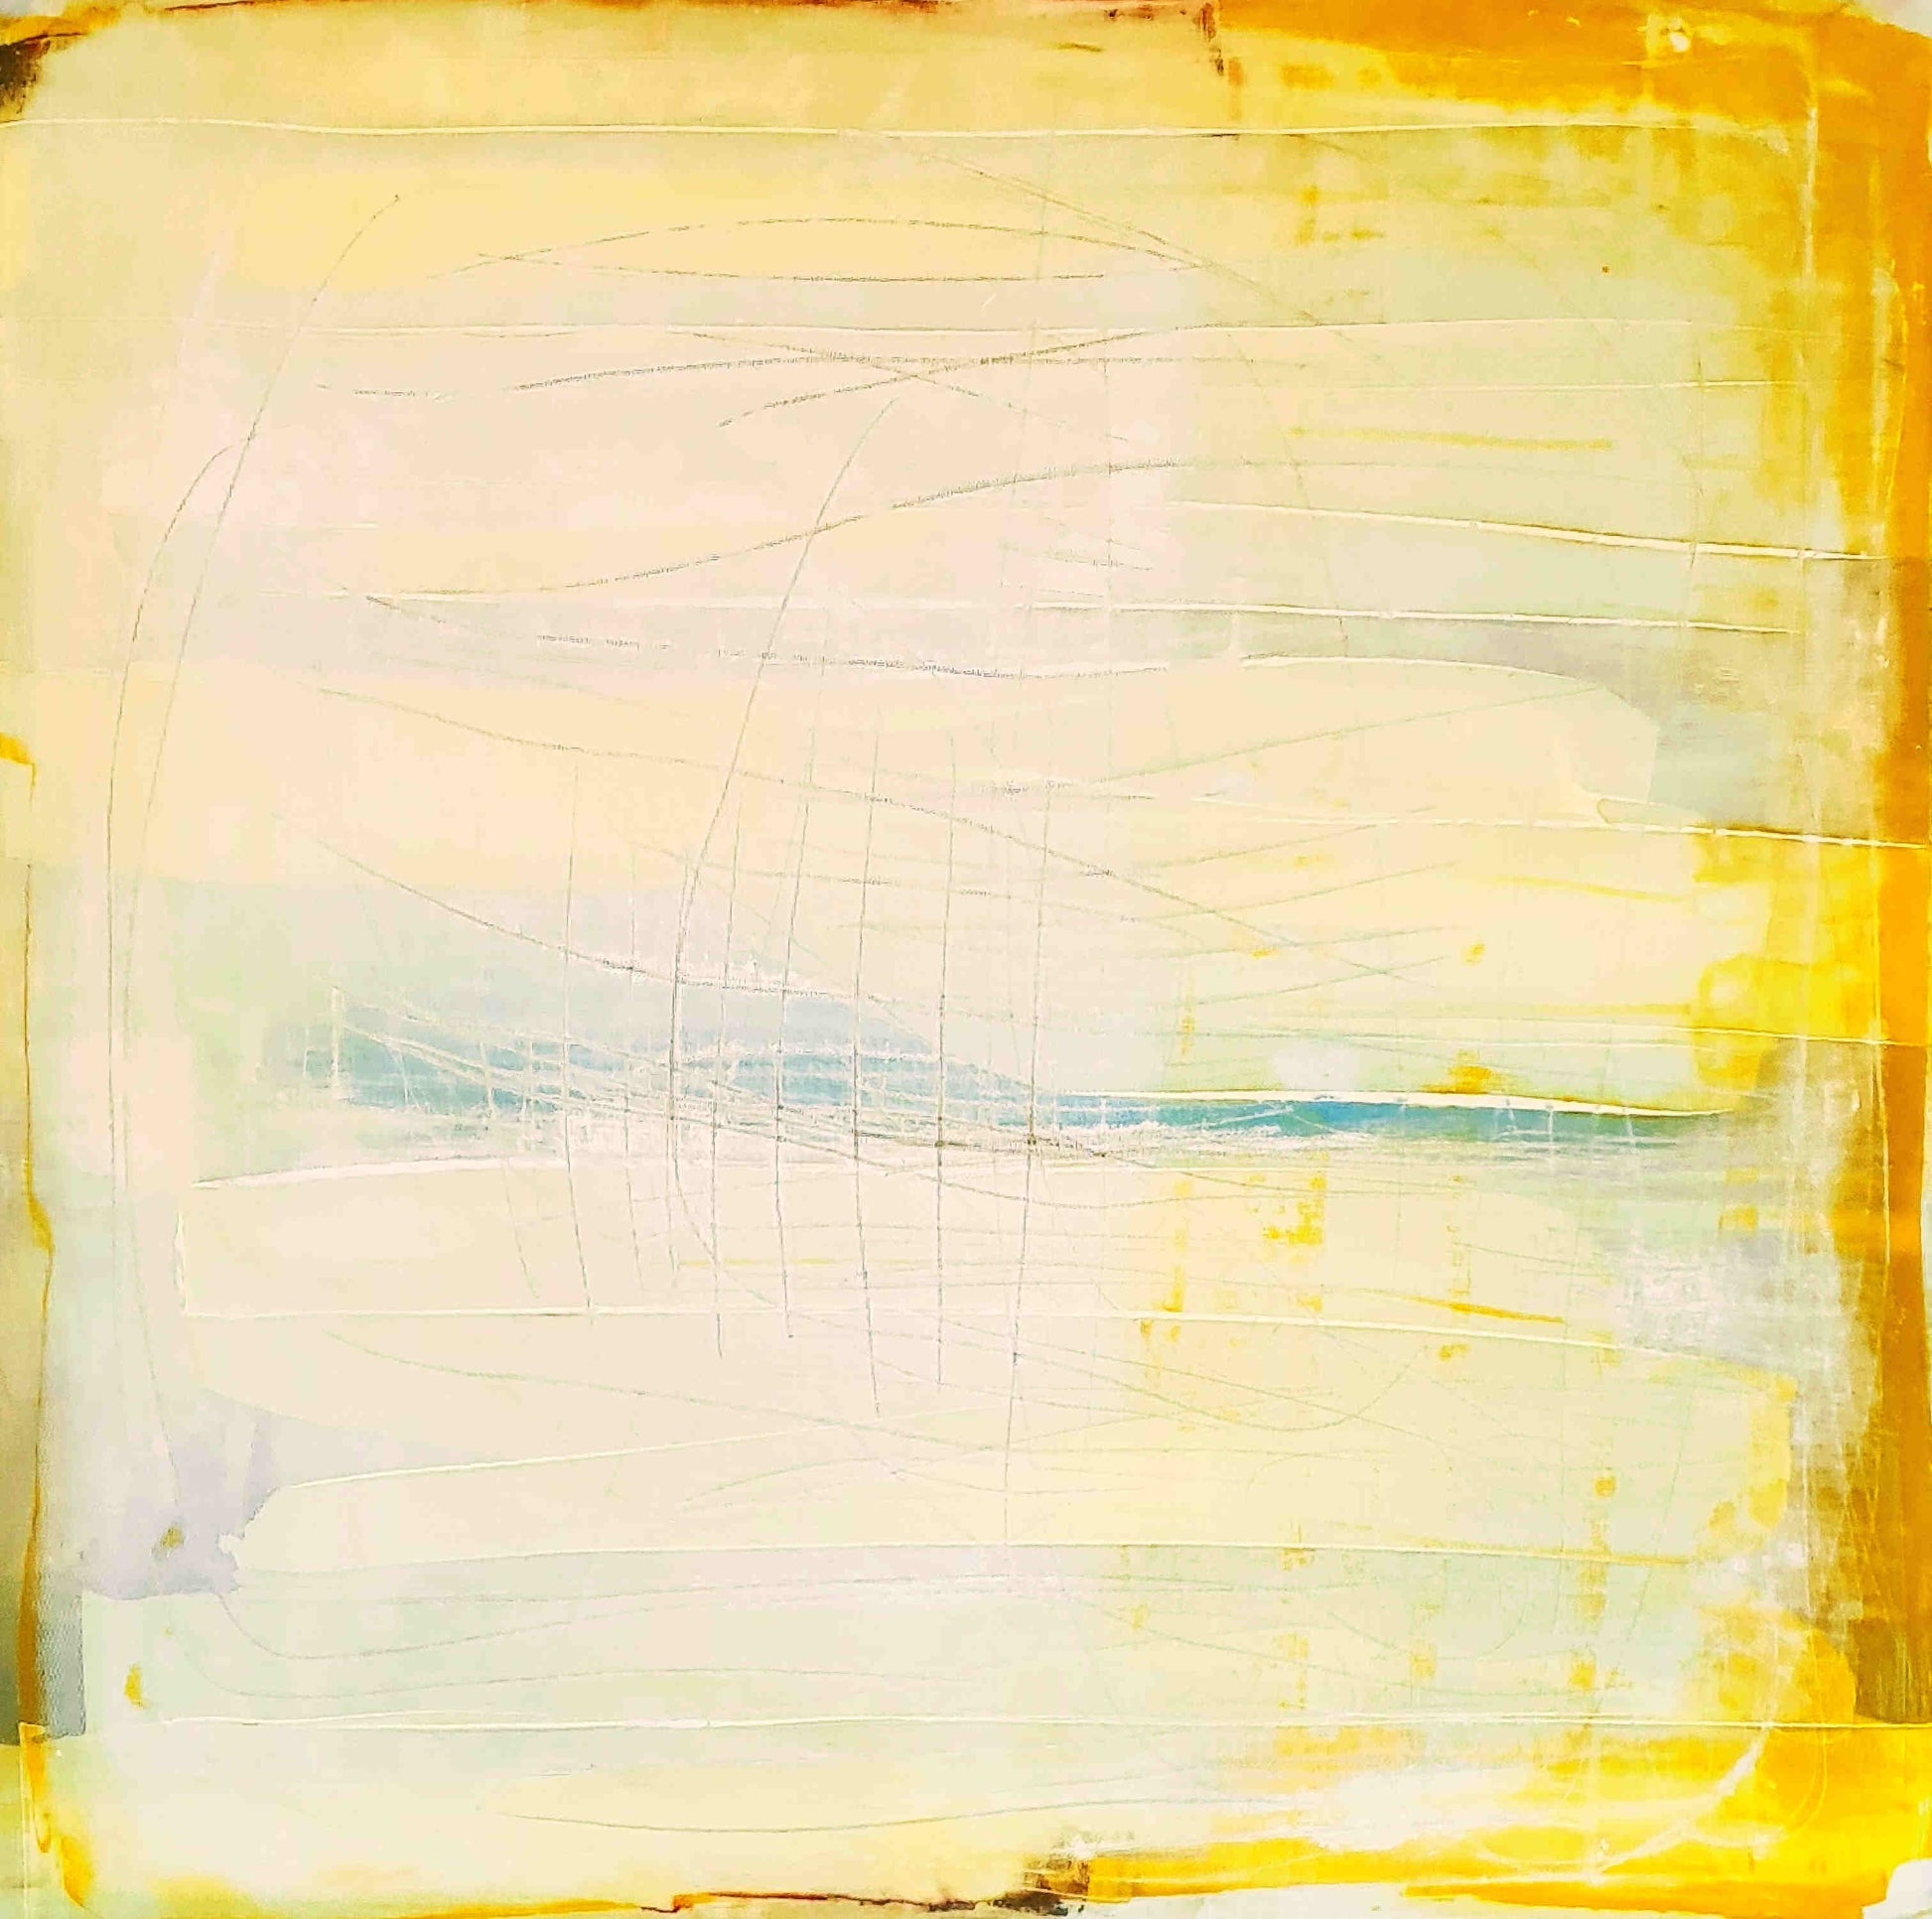 Auftragskunst, abstrakte Bilder, Die Welt des Küstenzaubers - 80 x 80 cm - Bild 2 von 4 - direkt versandfertig,gelbes-bild, abstrakte Bilder kaufen ,